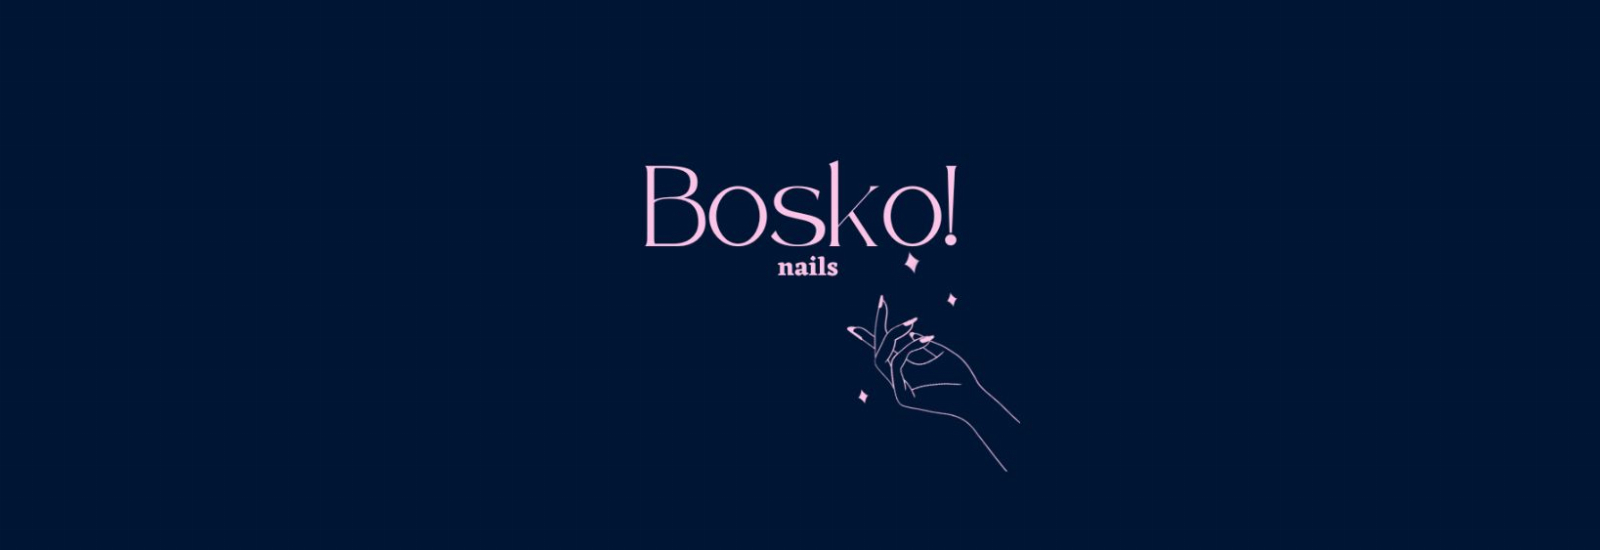 Bosko! nails